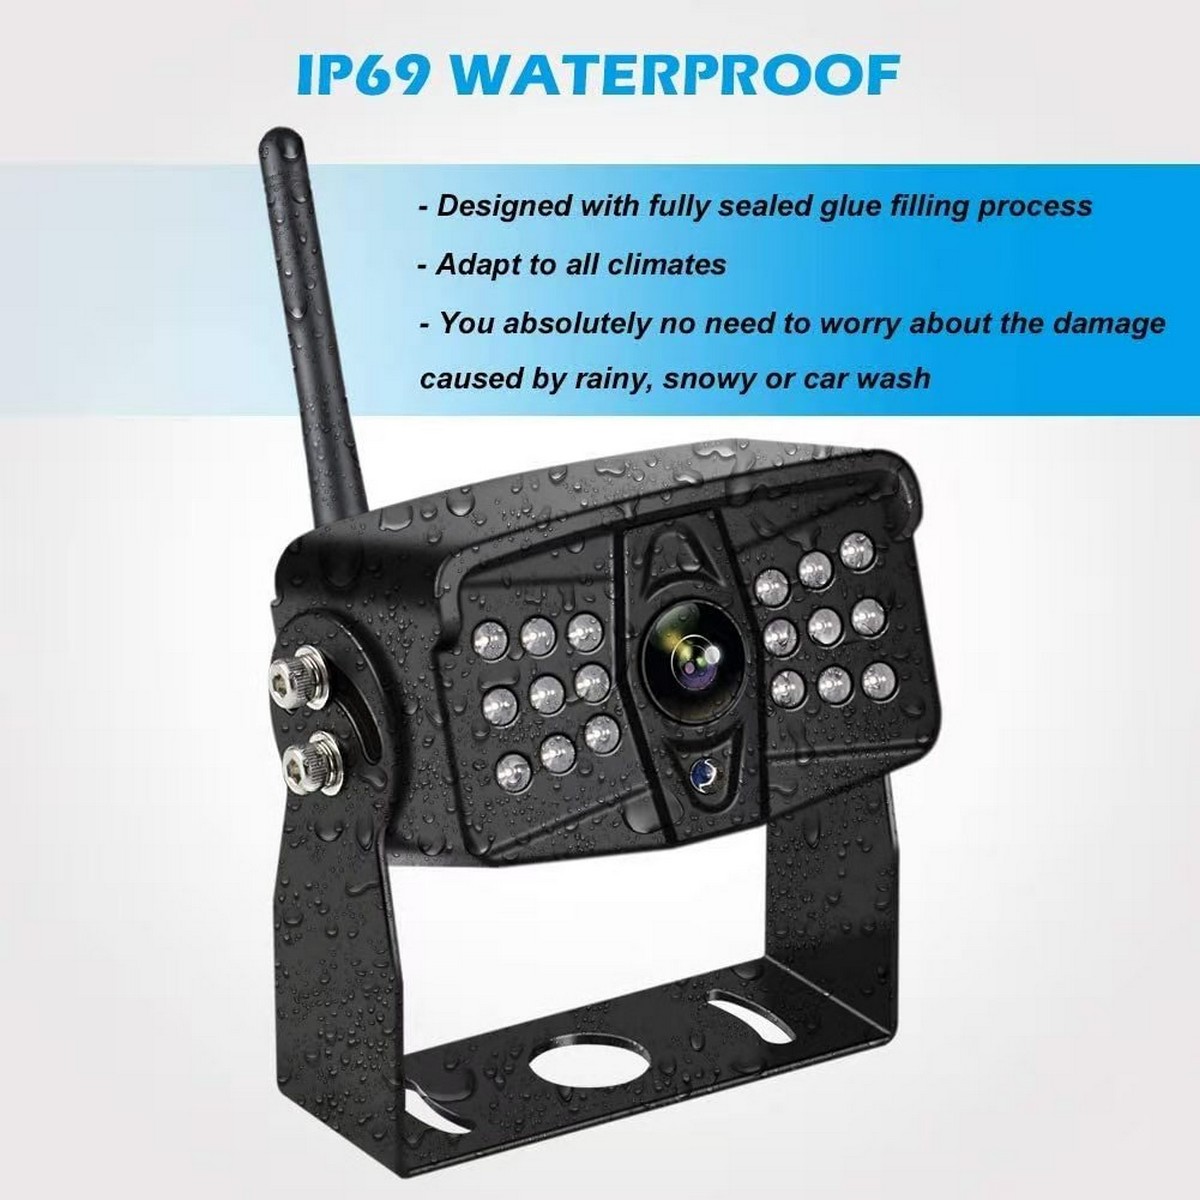 IP69 waterproof reversing camera for van